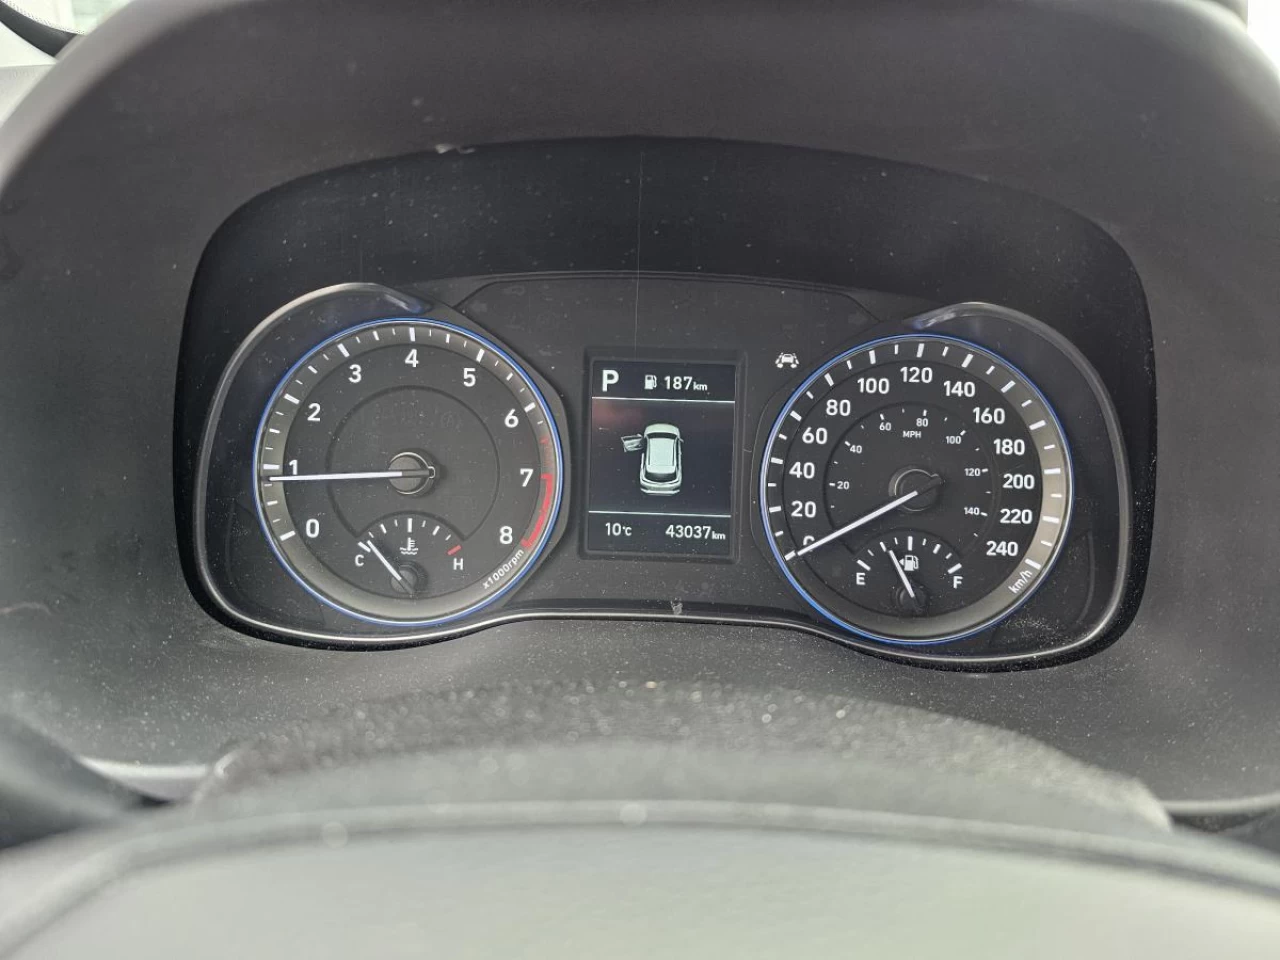 2019 Hyundai Kona LUXURY - AWD - TOIT - CUIR - CARPLAY Main Image